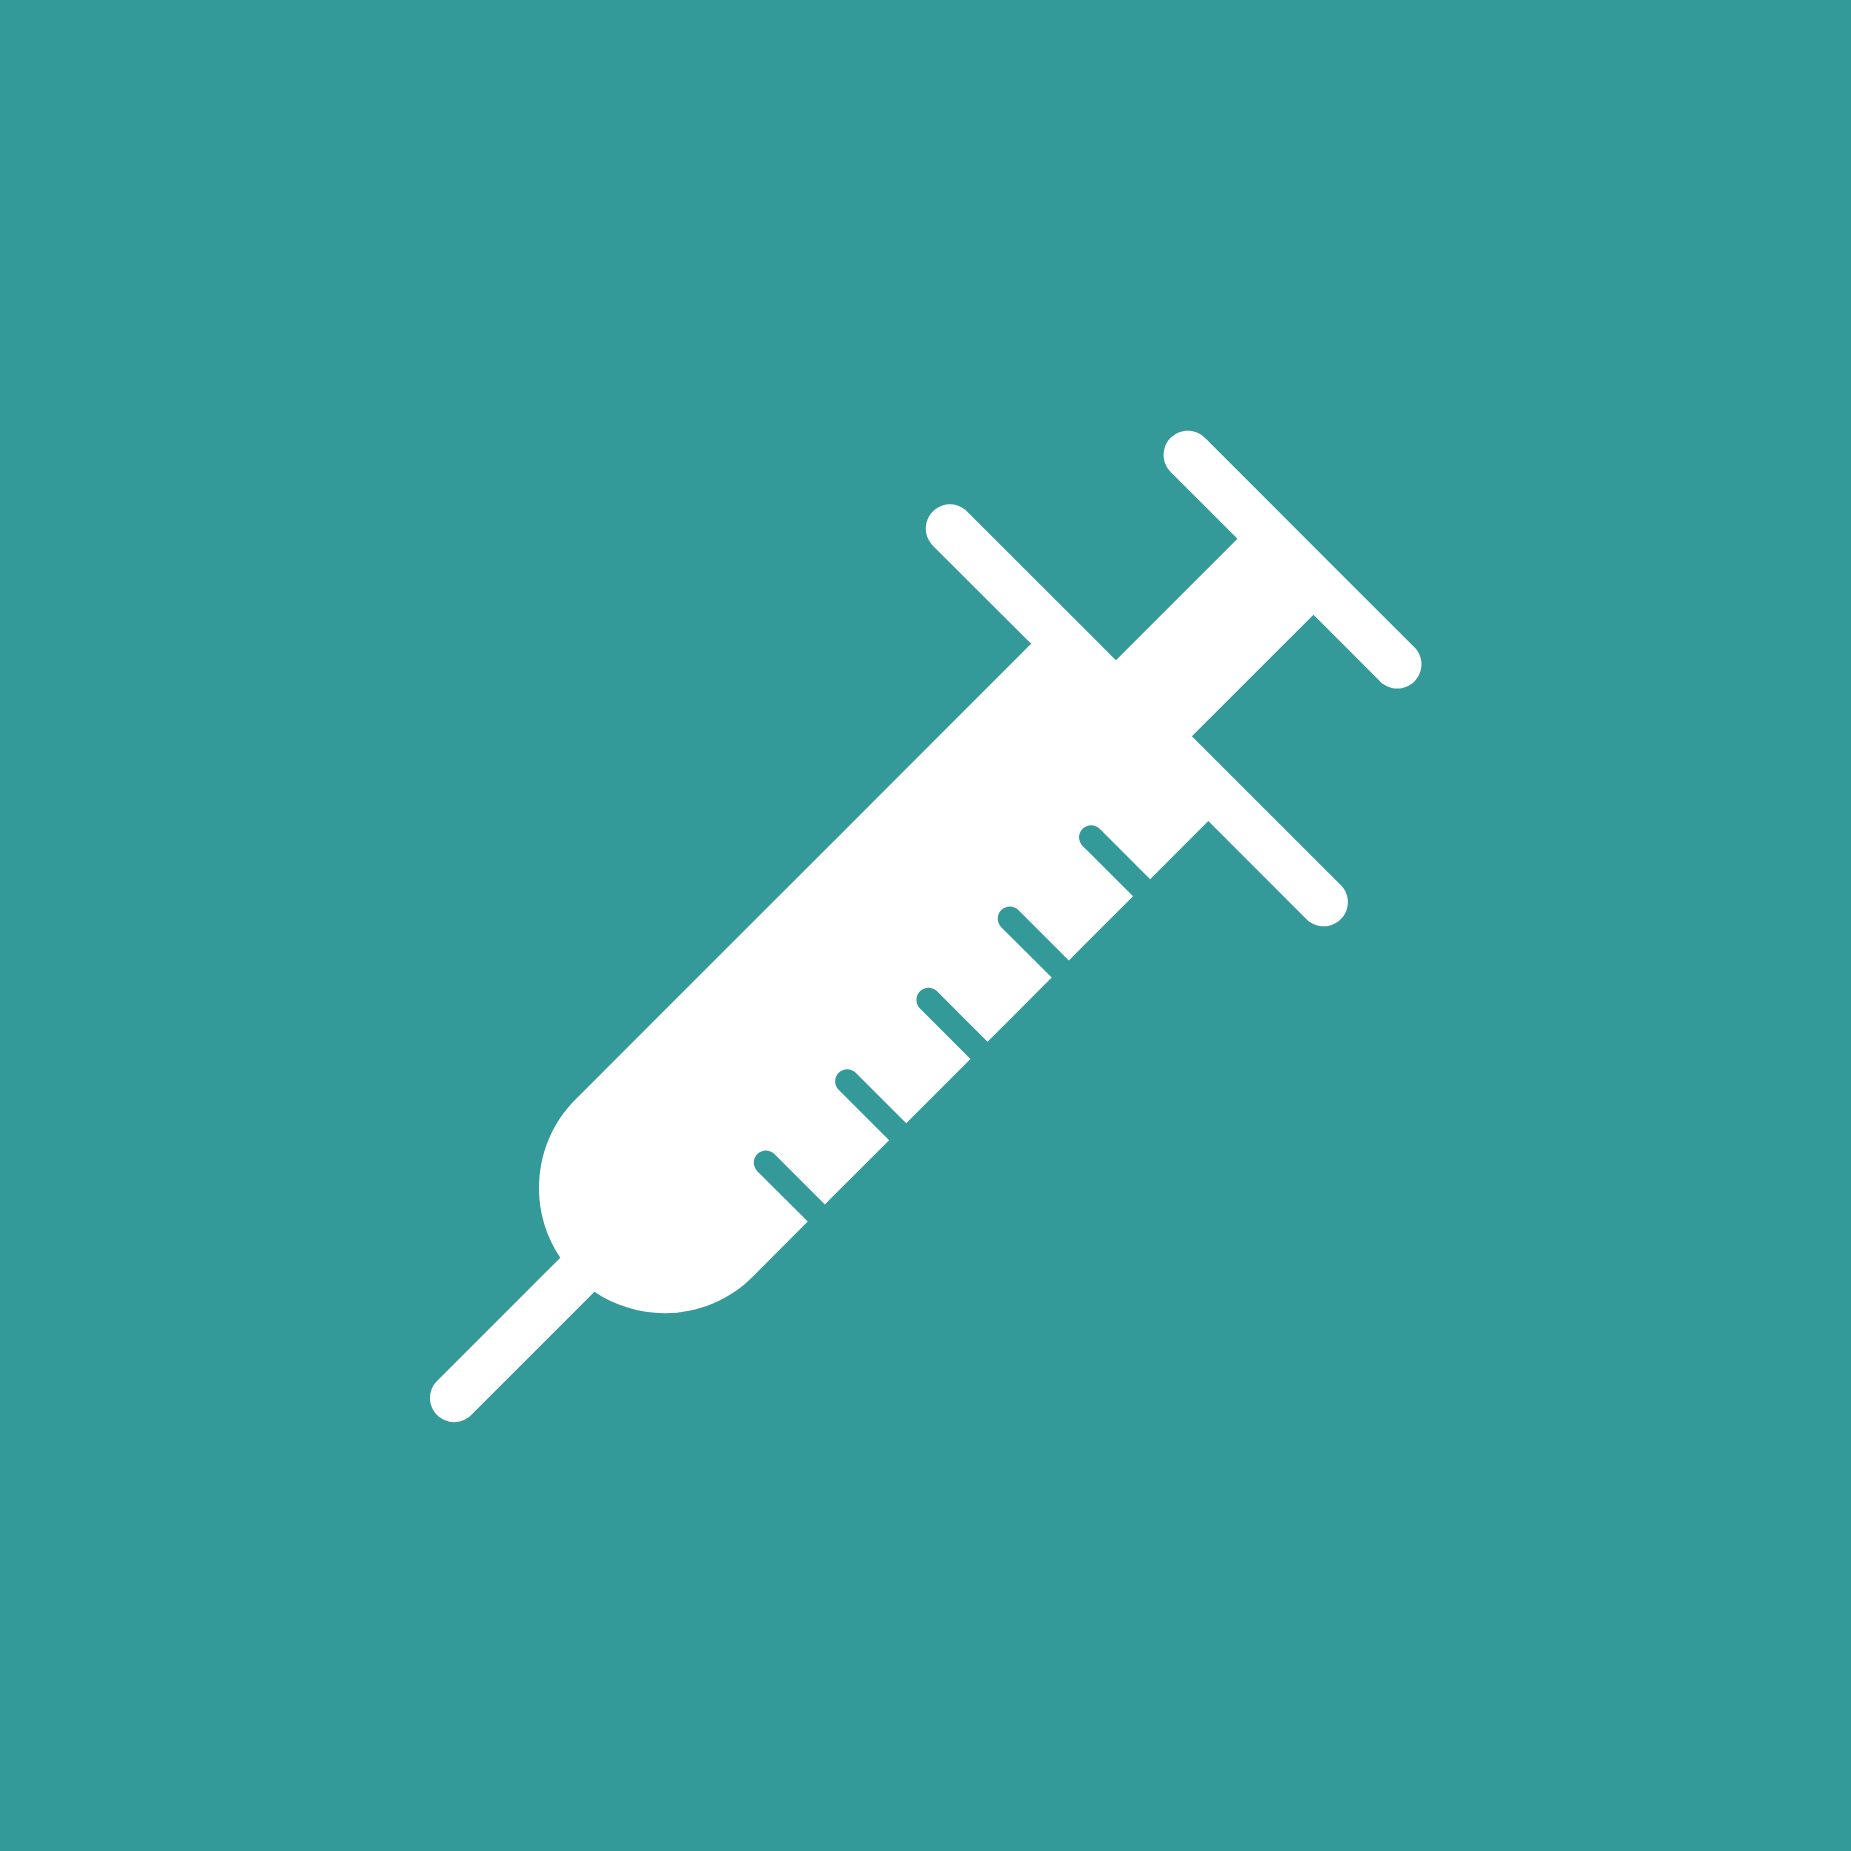 an illustration of a syringe